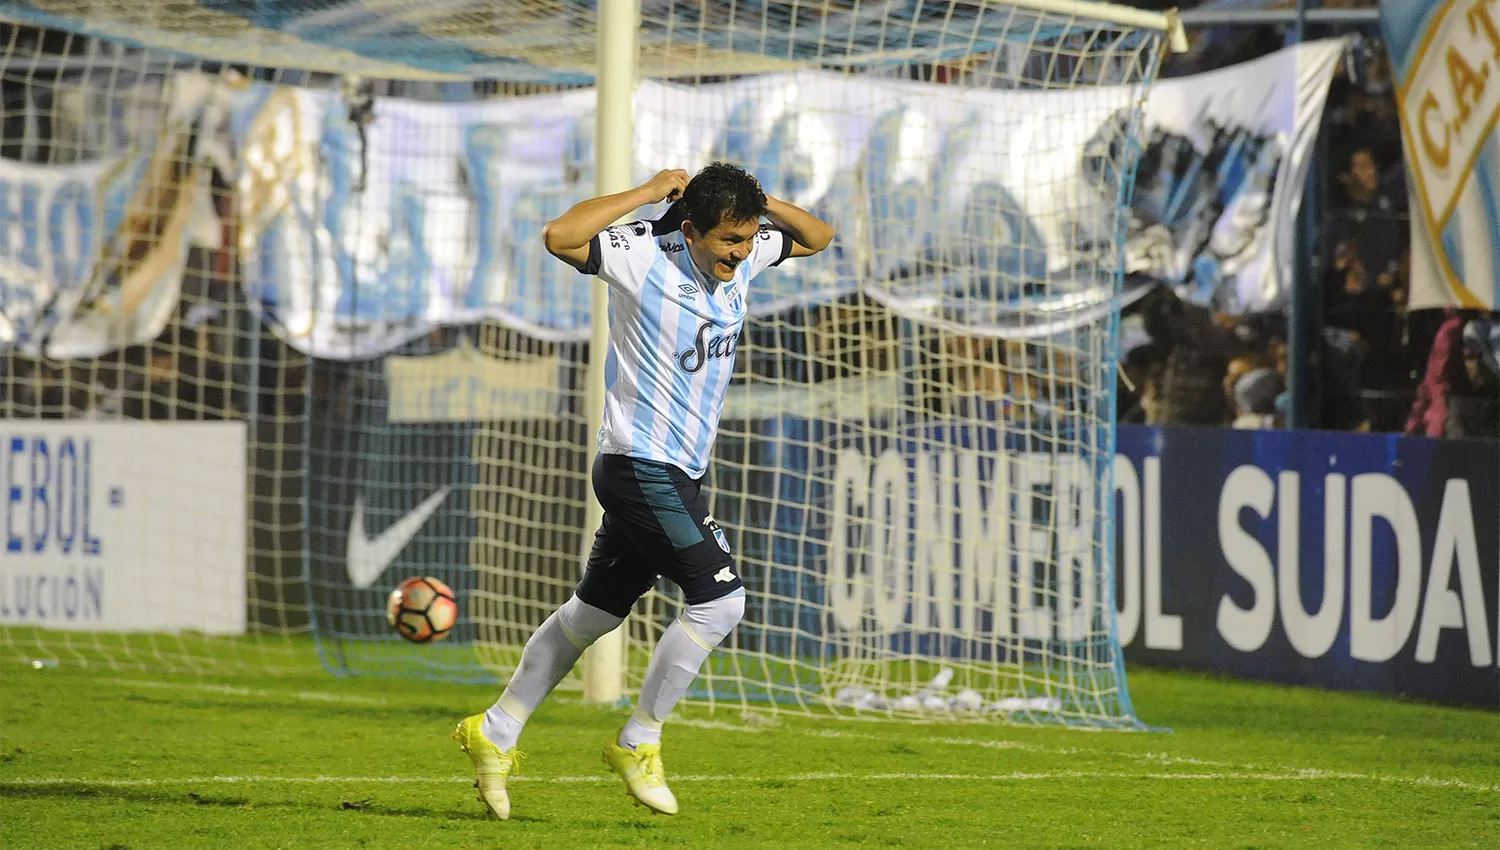 GOLEADOR. El Pulga marcó cinco goles en la Sudamericana. (ARCHIVO LA GACETA)